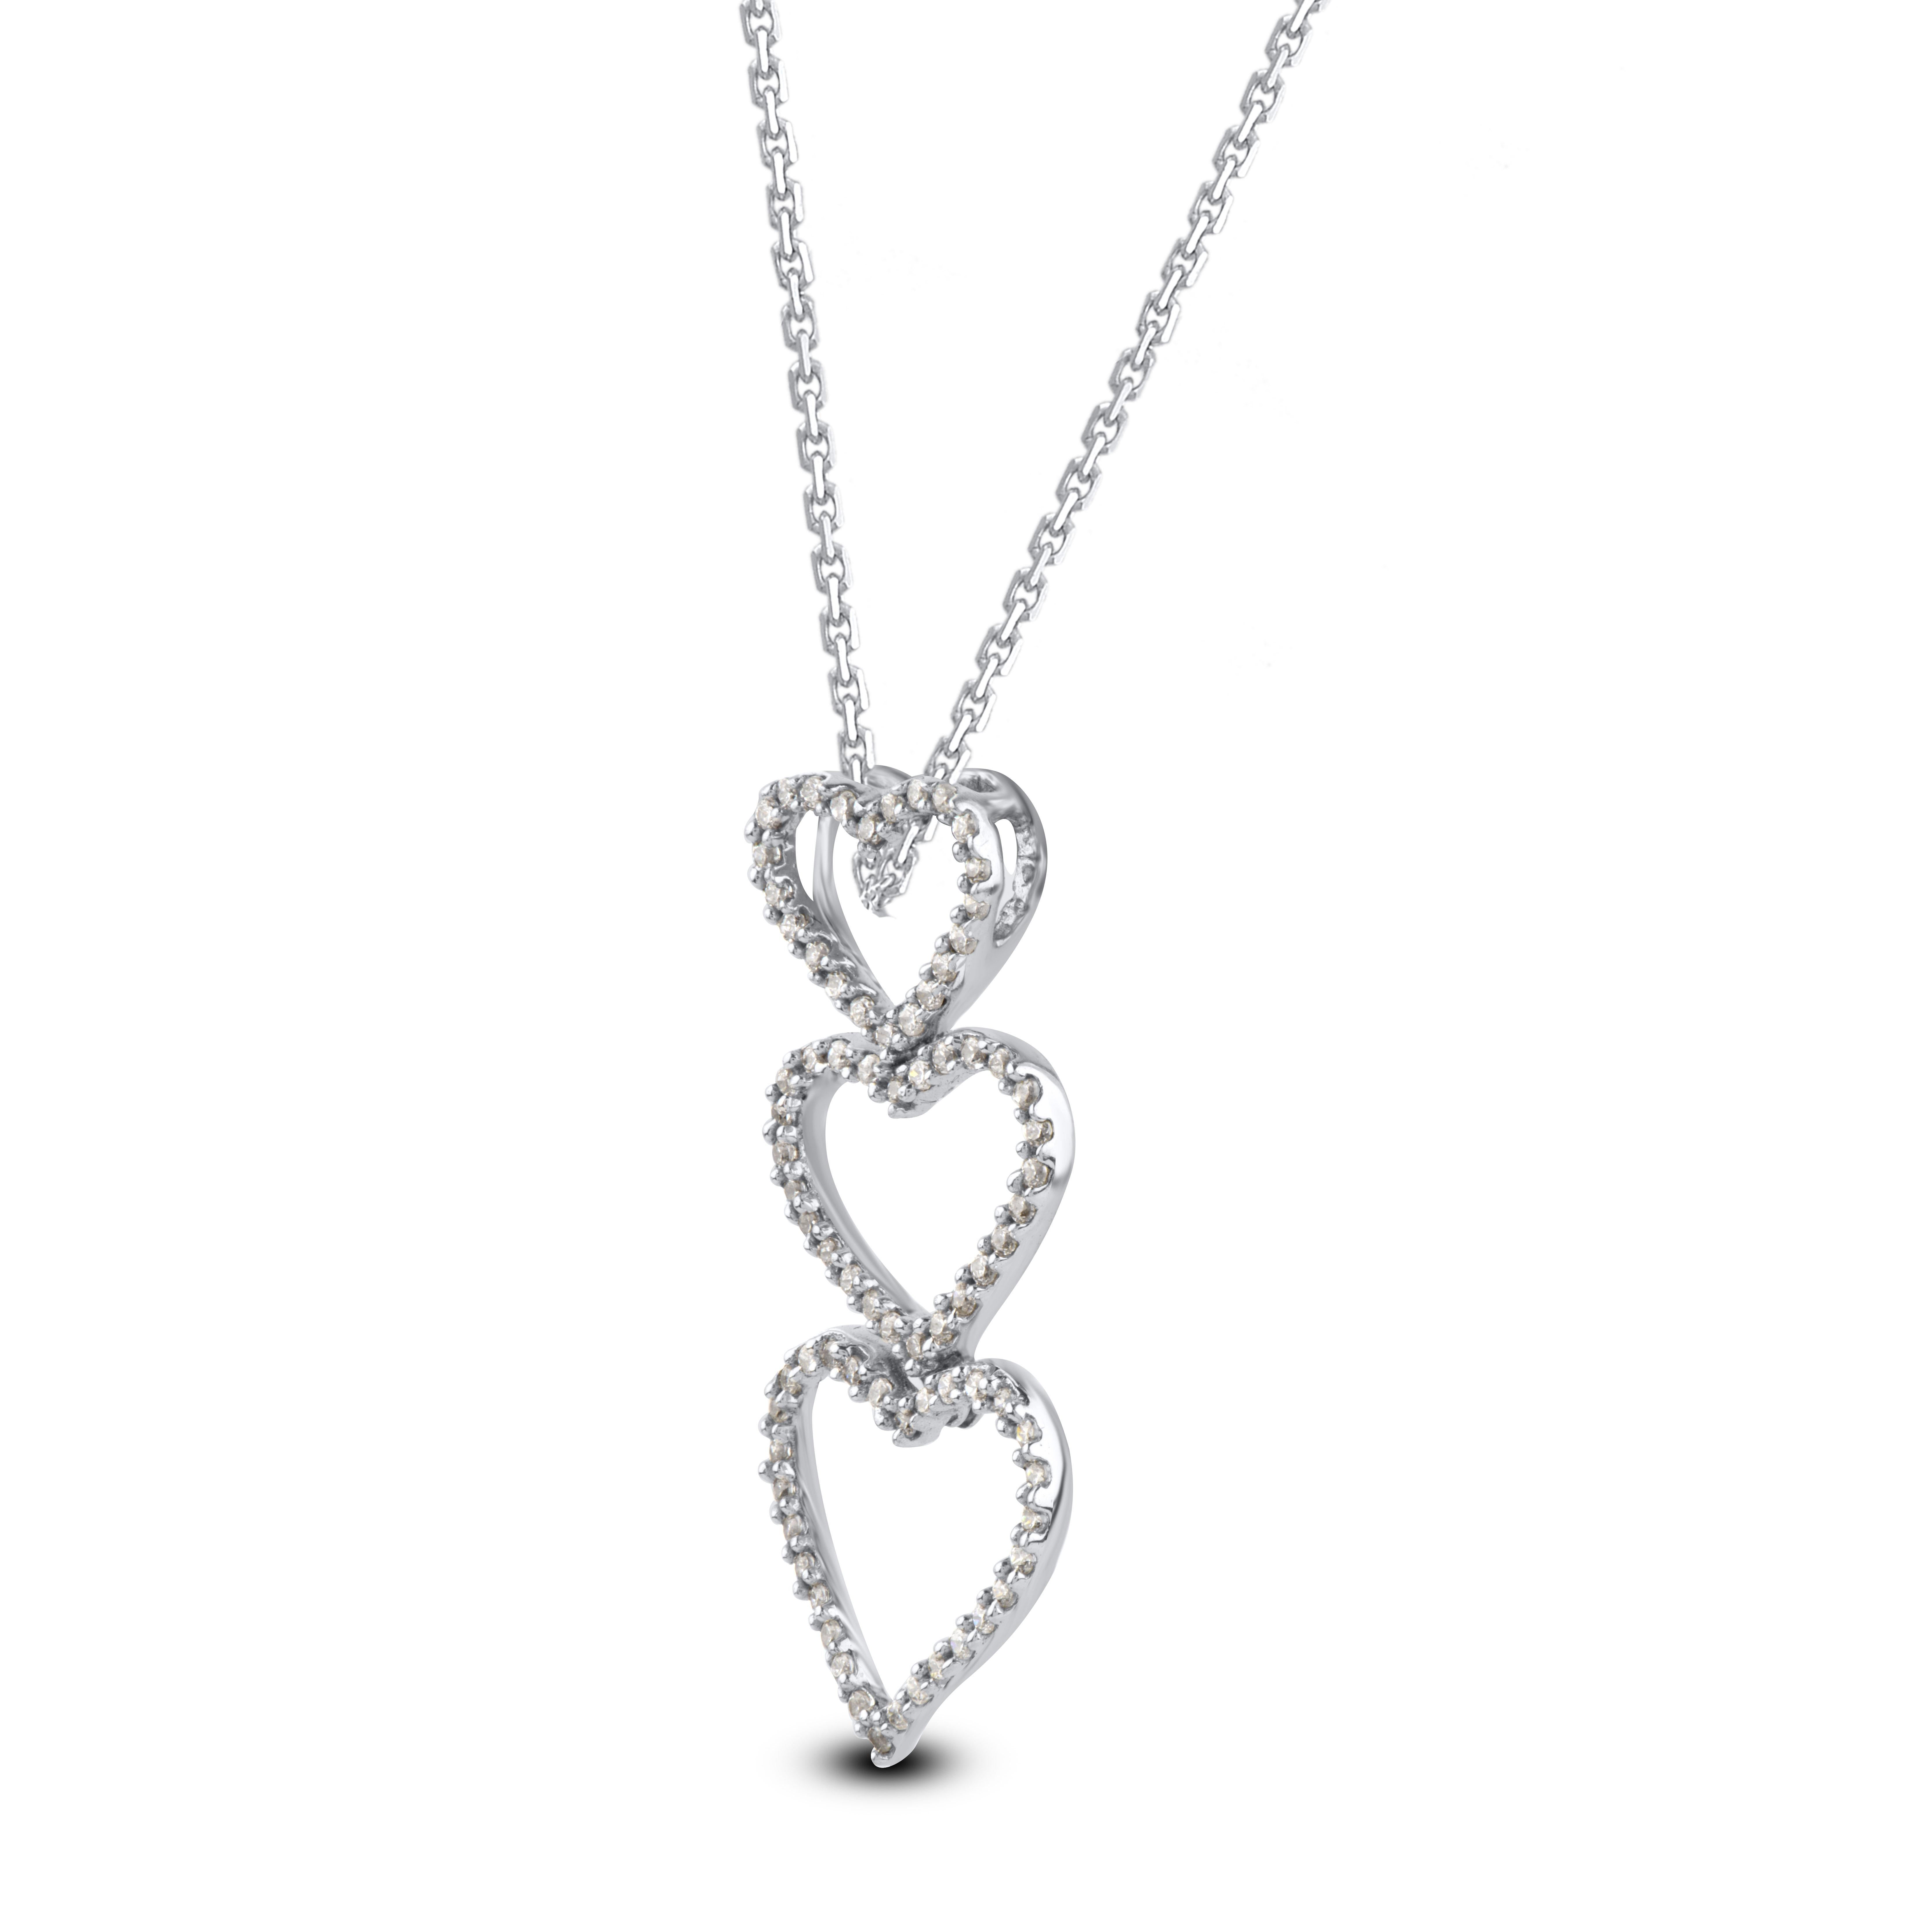 Bringen Sie Charme in Ihren Look mit dieser Diamant-Halskette mit Herzanhänger. Der Anhänger ist aus 14-karätigem Weißgold gefertigt und verfügt über 78 runde Diamanten im Einzelschliff, die in einer Pave-Fassung gefasst sind. Das Gesamtgewicht des